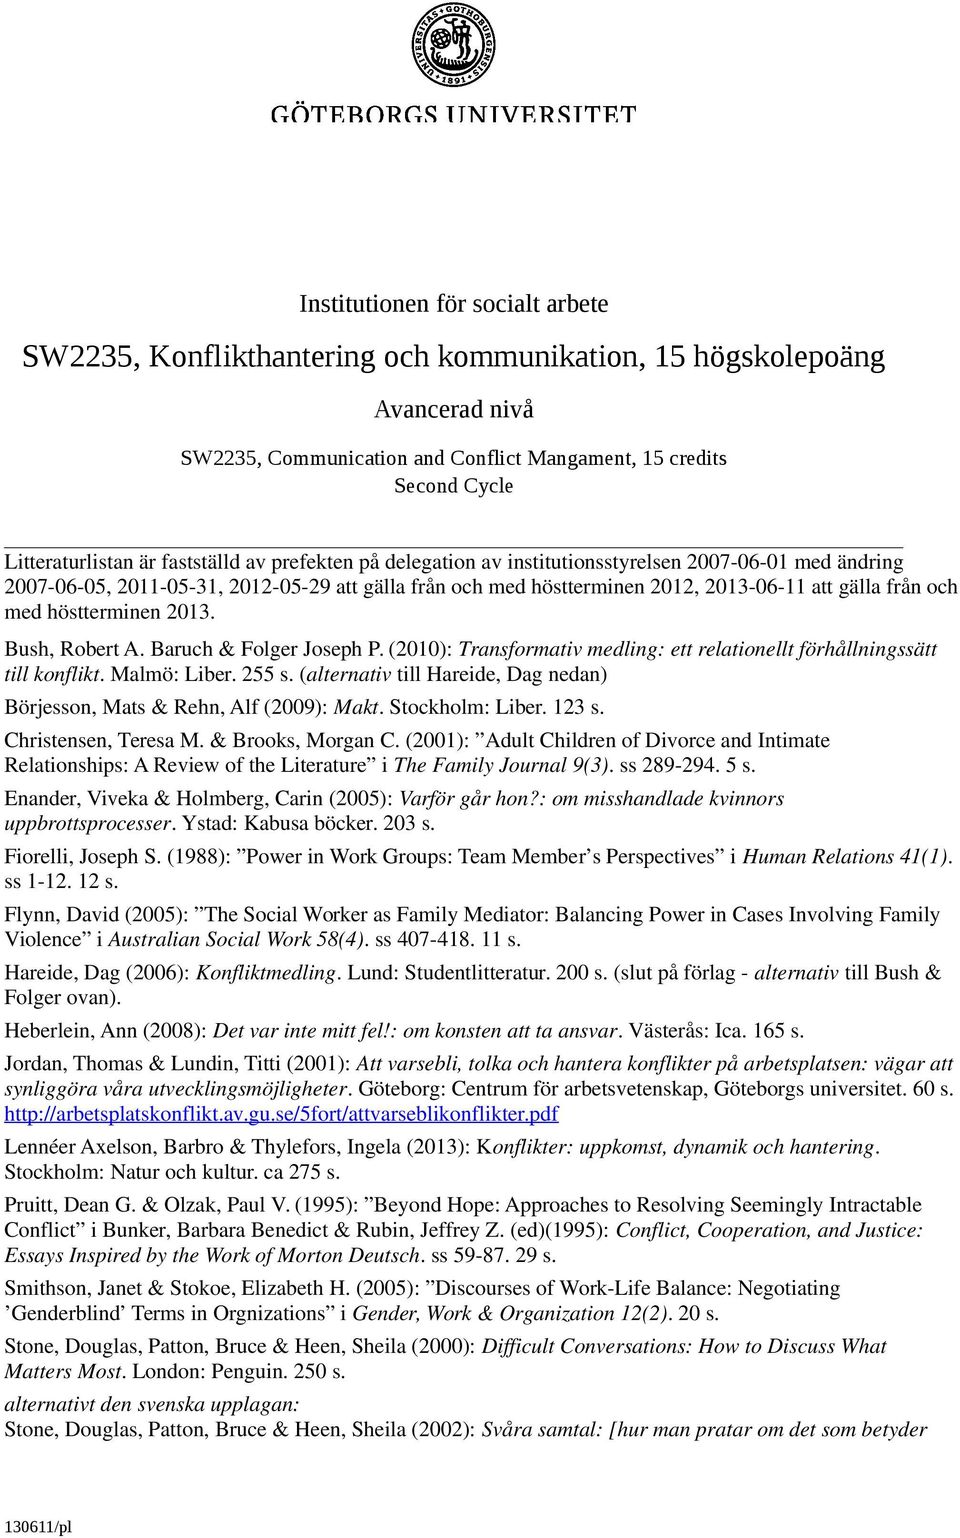 höstterminen 2013. Bush, Robert A. Baruch & Folger Joseph P. (2010): Transformativ medling: ett relationellt förhållningssätt till konflikt. Malmö: Liber. 255 s.